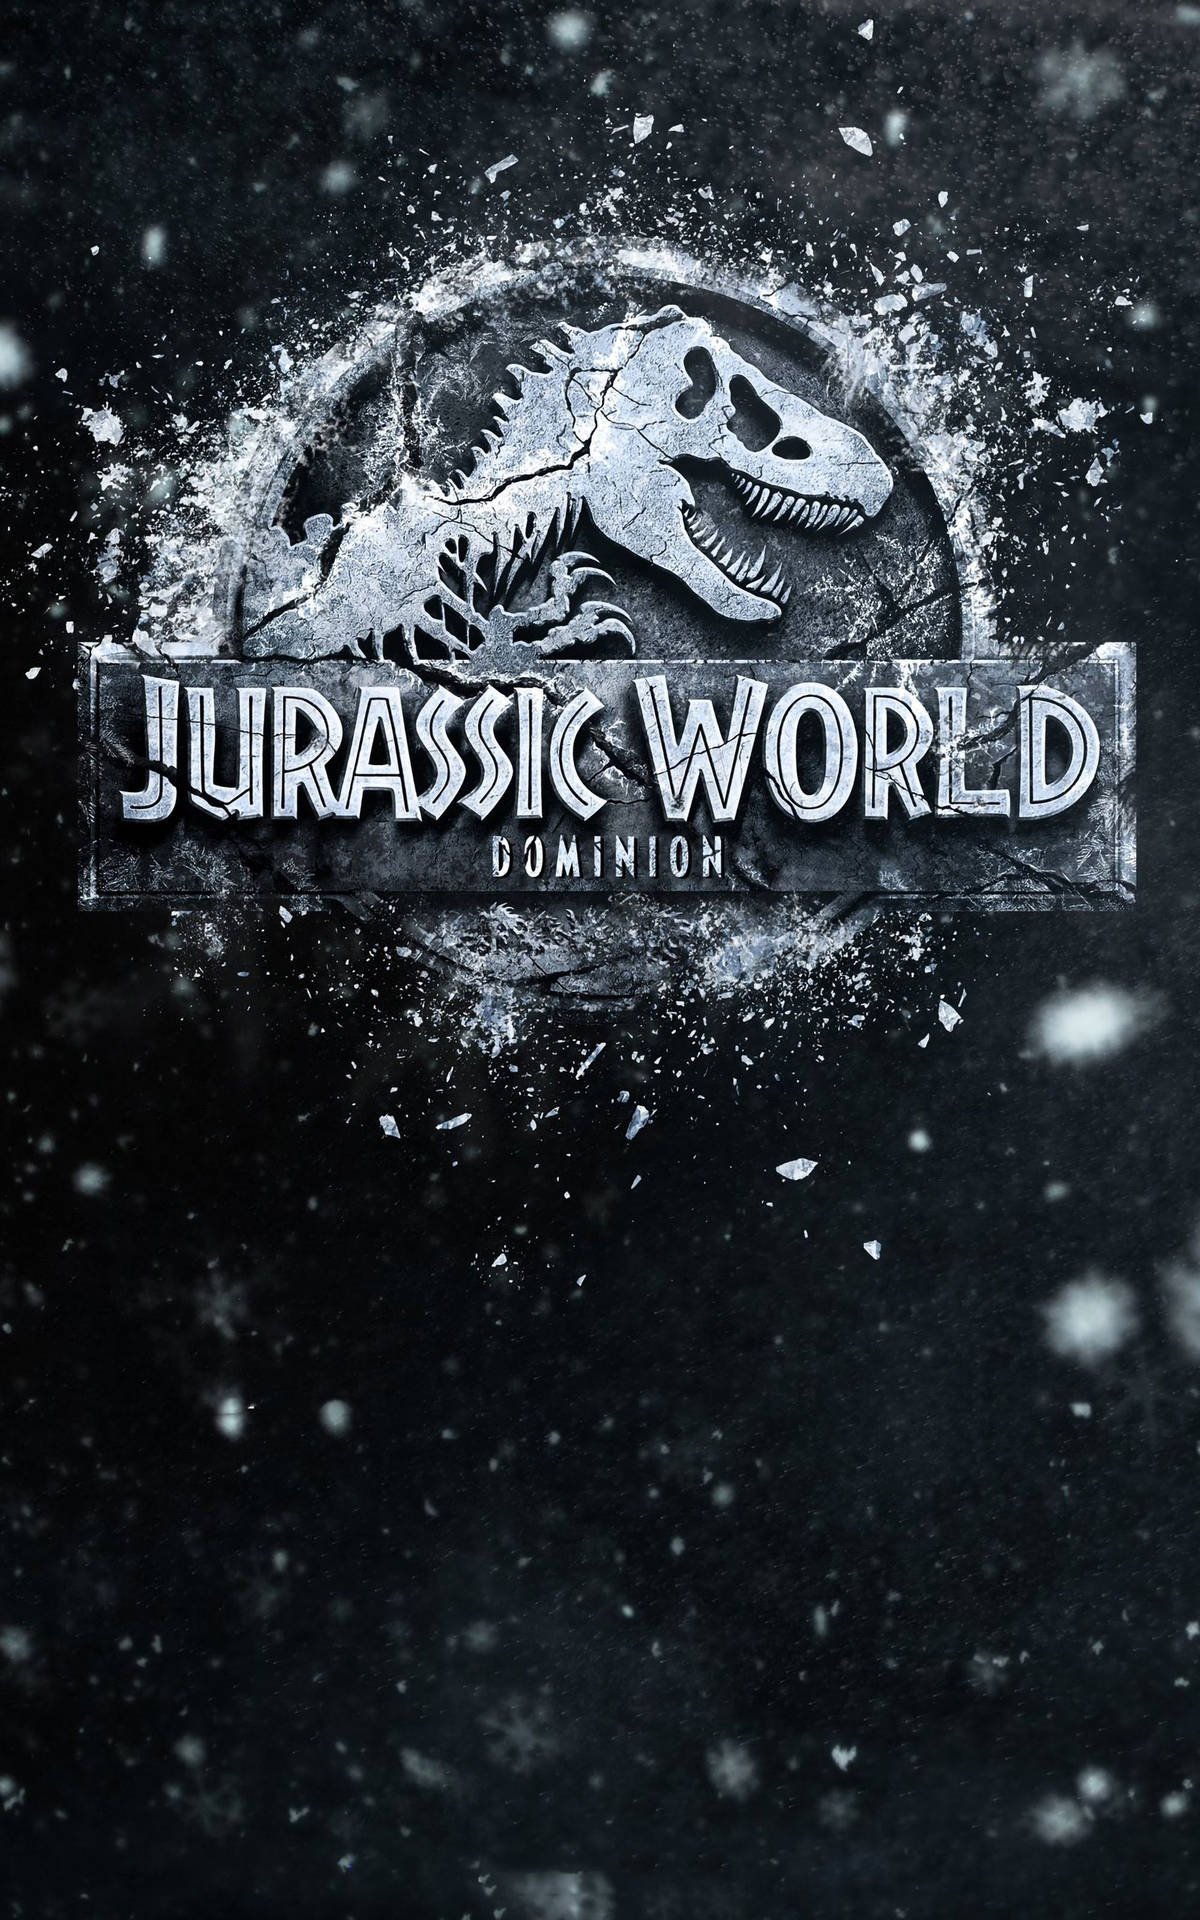 Snowy Dark Jurassic World Dominion Poster